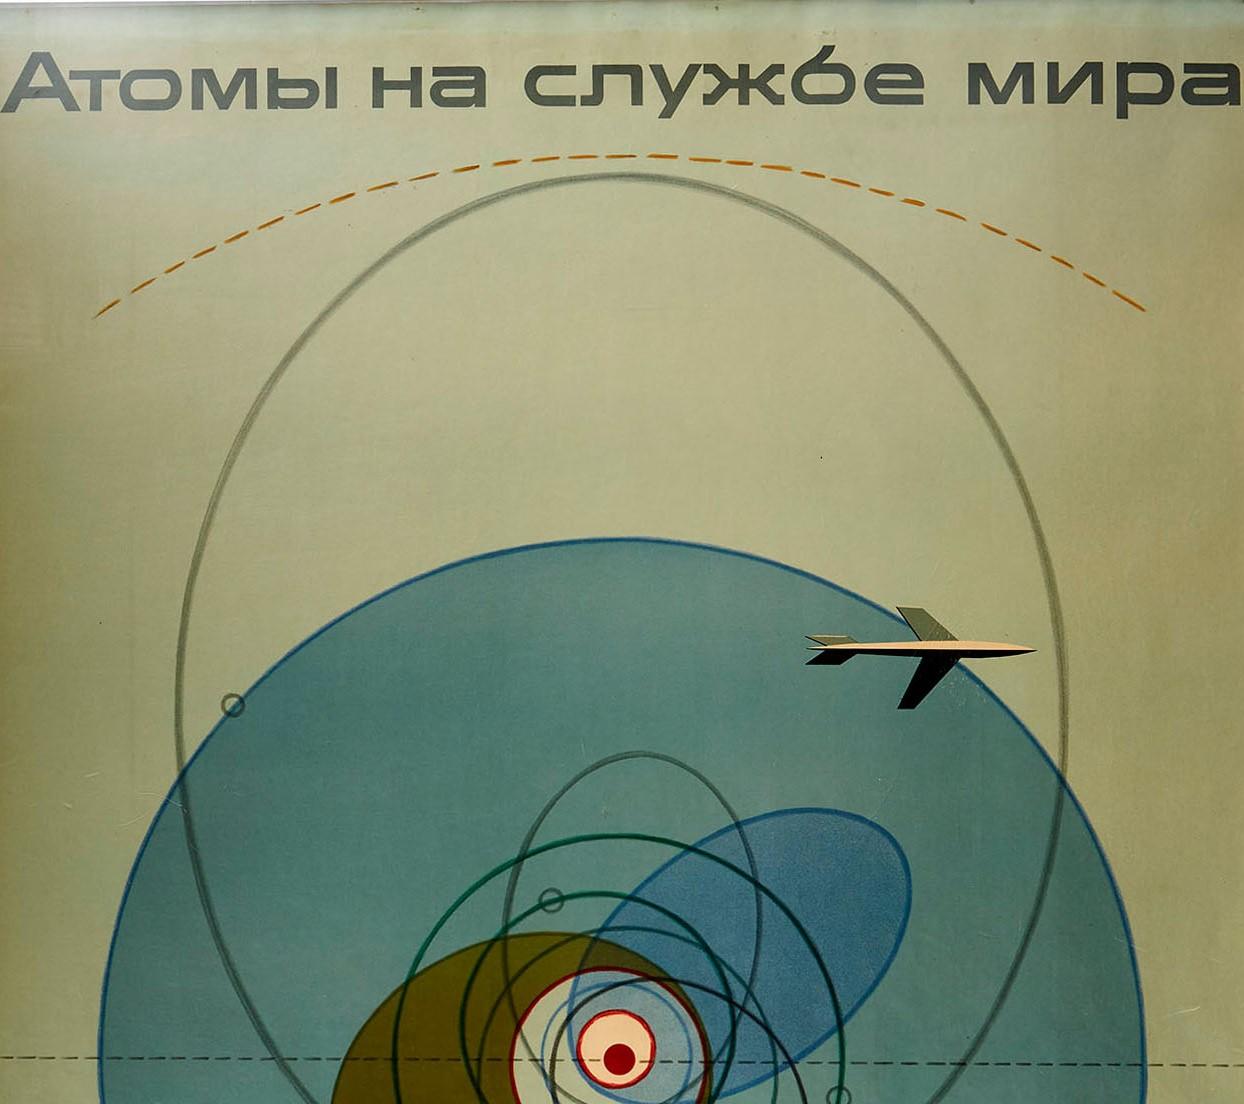 Originalplakat von General Dynamics des Illustrators, Typografen und Grafikdesigners Erik Nitsche (1908-1998), das für Astrodynamik wirbt. Großartige Illustration mit einem Flugzeug, das über ein Diagramm fliegt, das die Astrodynamik vor einem